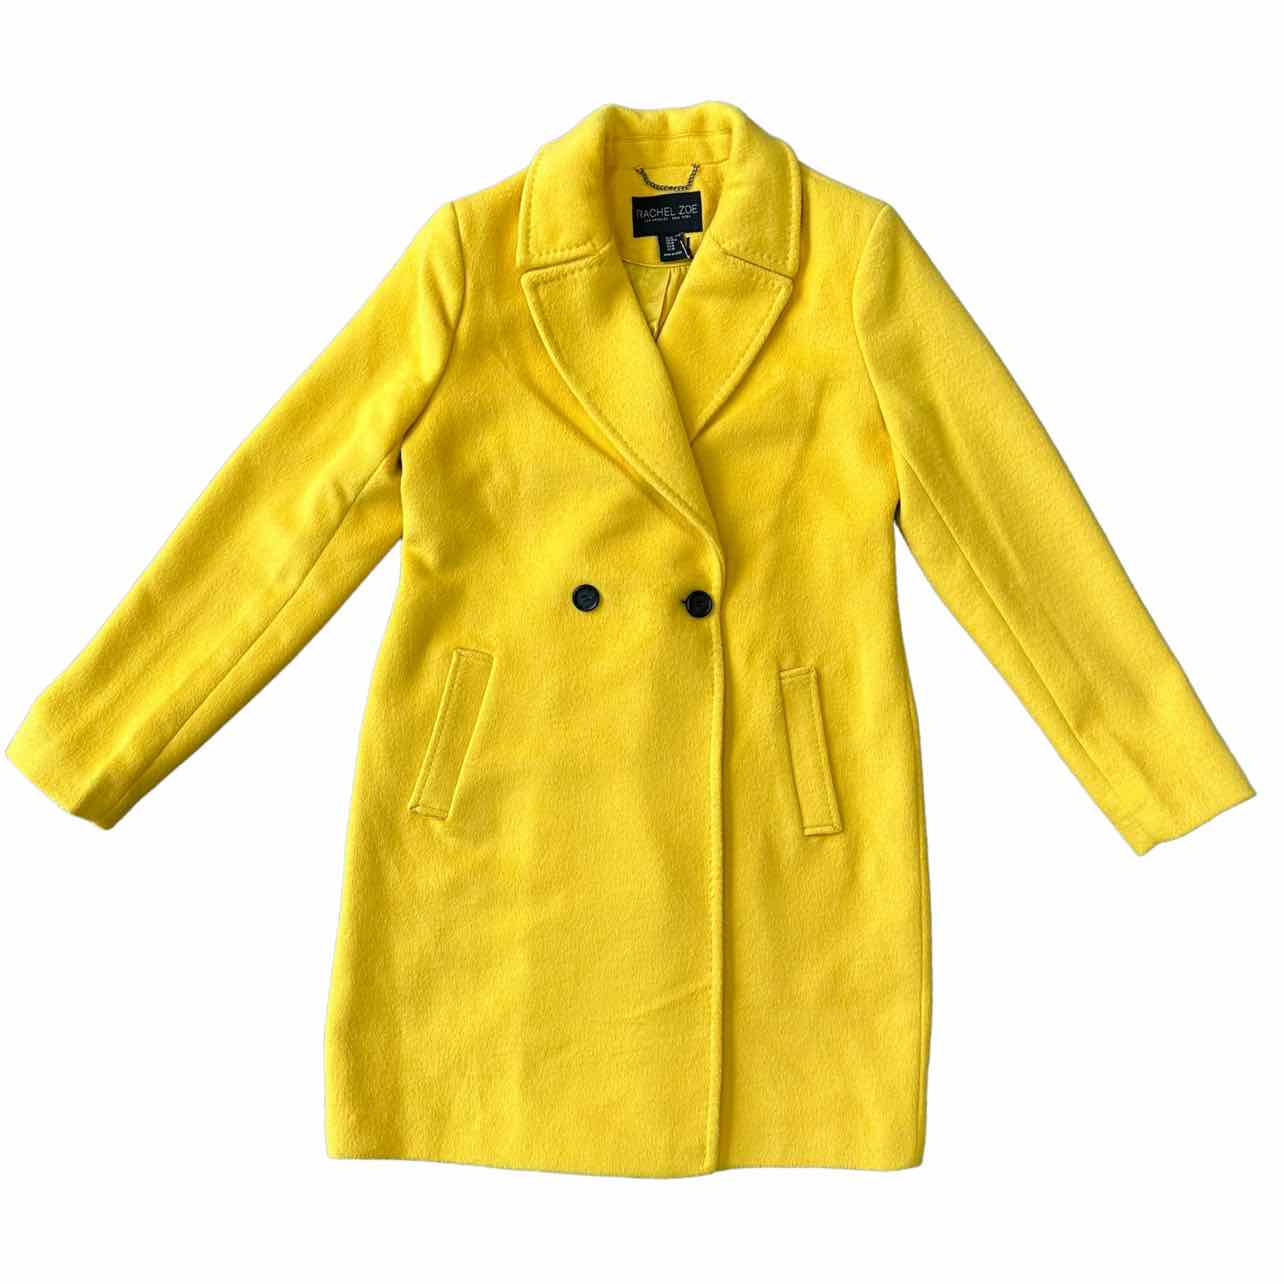 Rachel Zoe Size M Coat